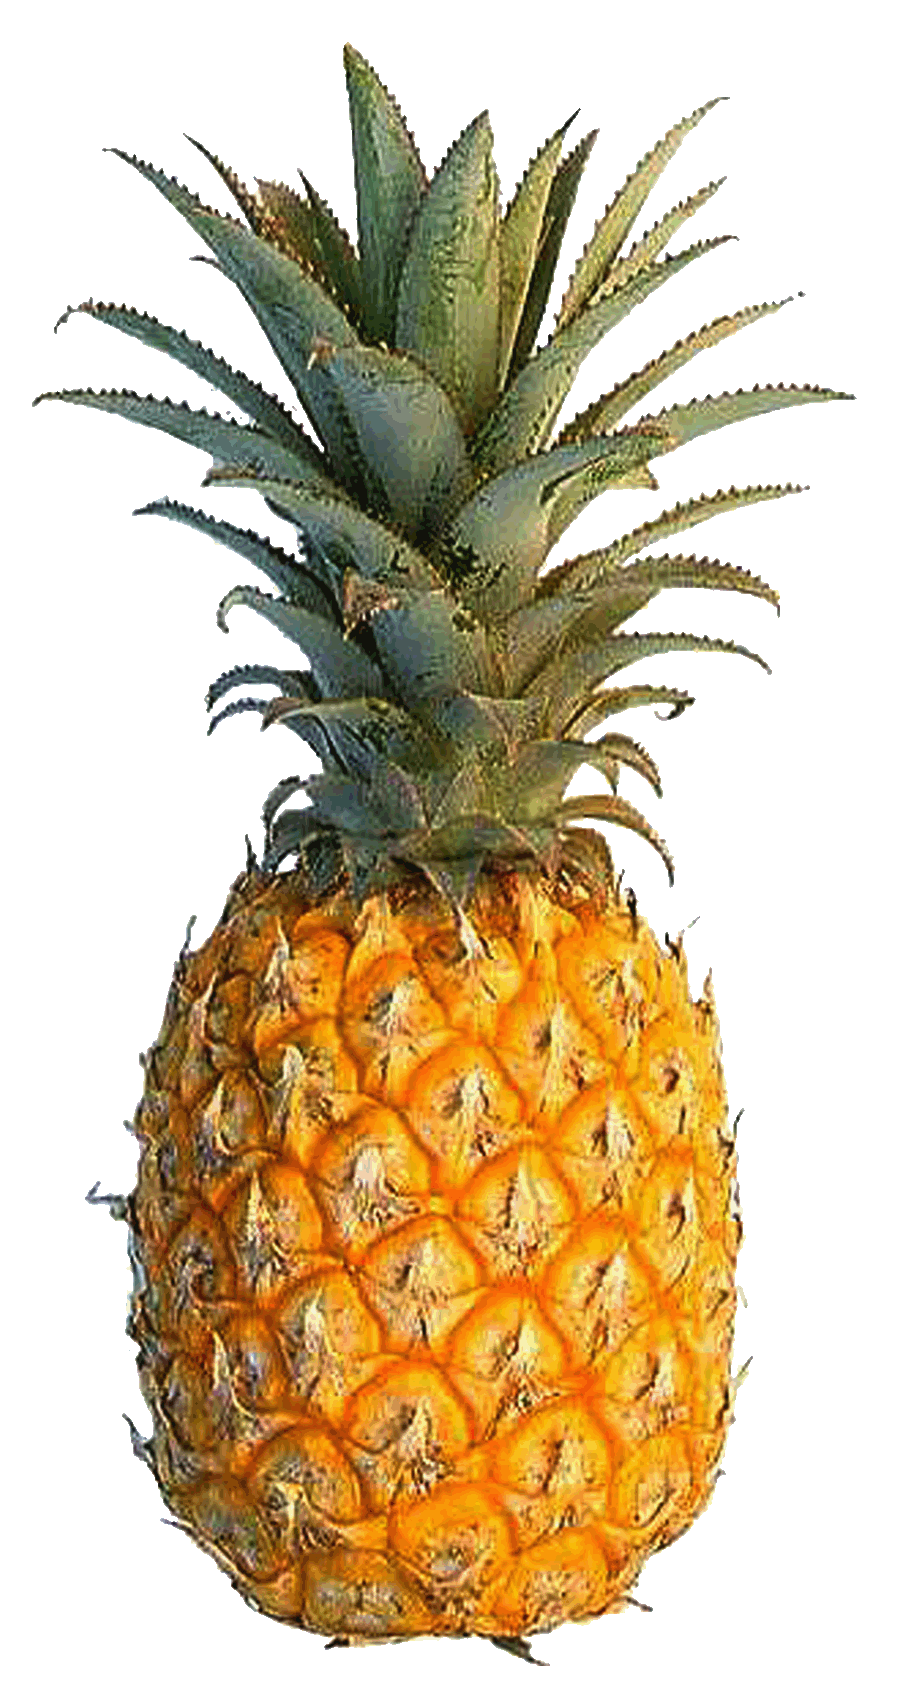 pineapple clipart jam